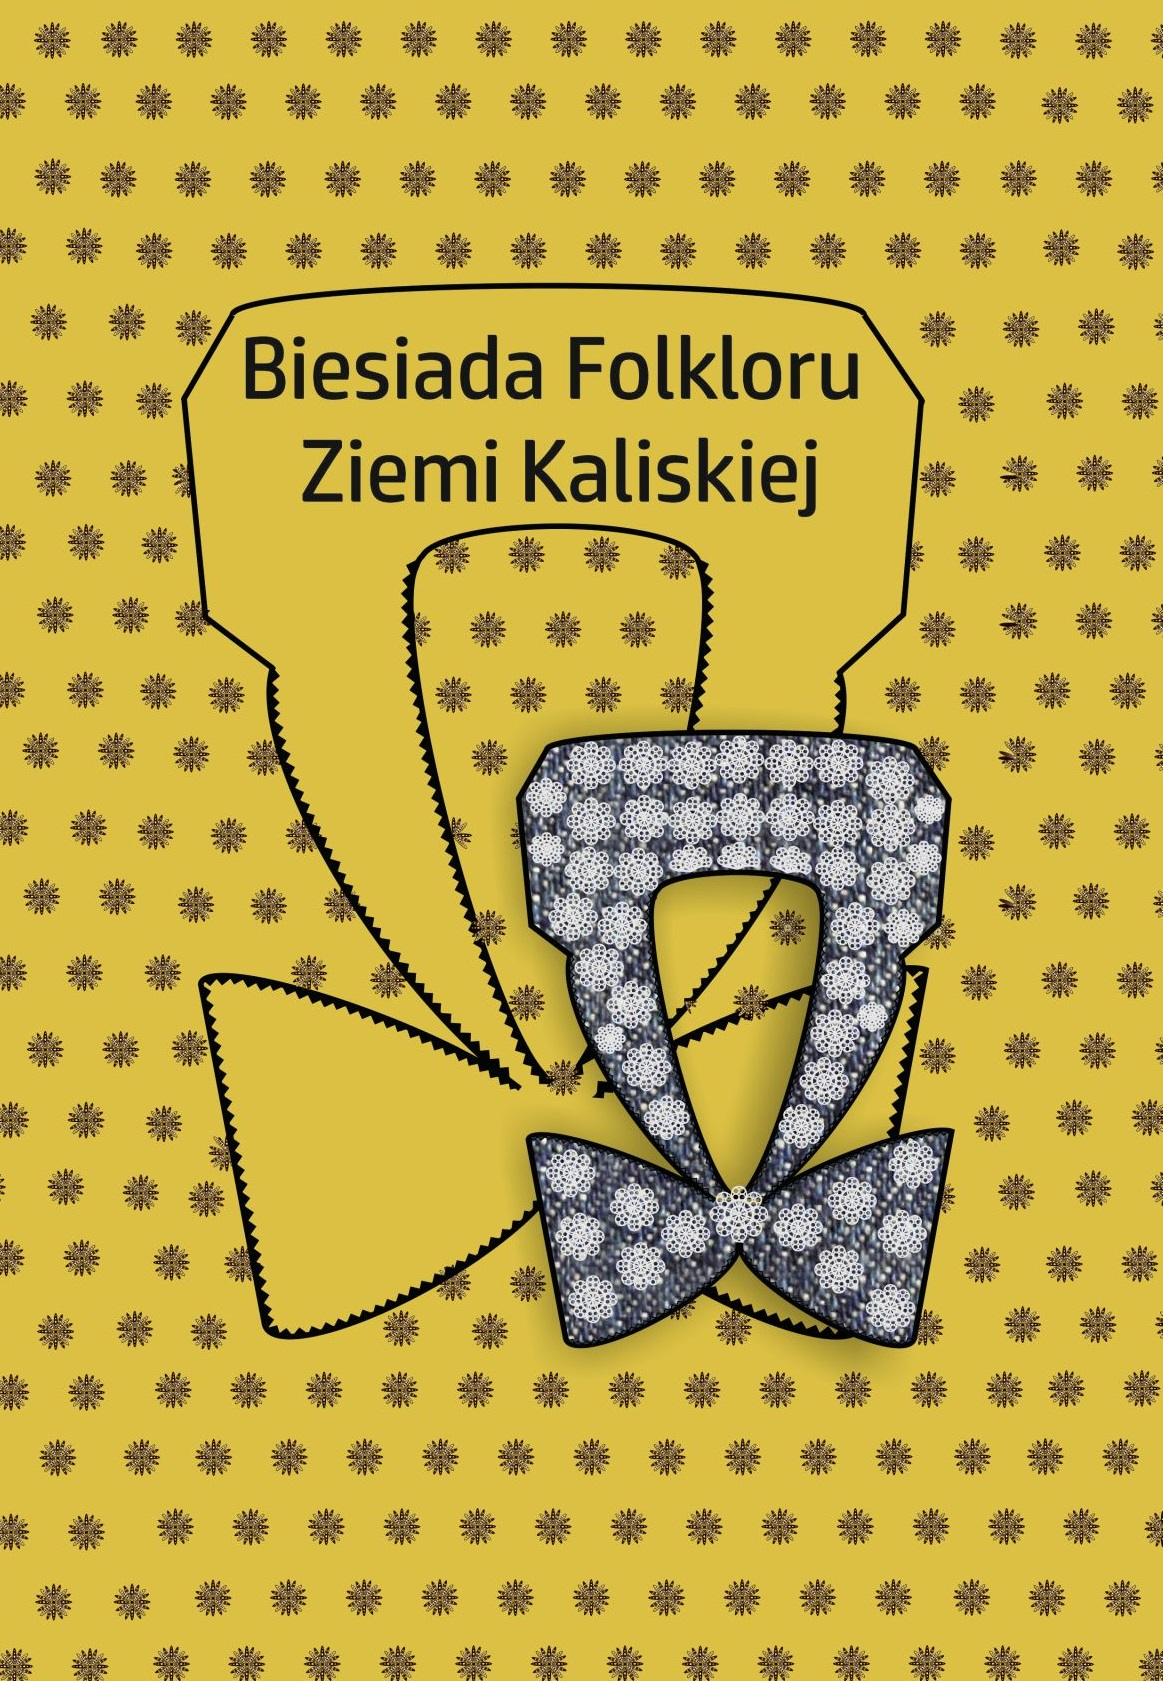 Biesiada Folkloru Ziemi Kaliskiej album 2020